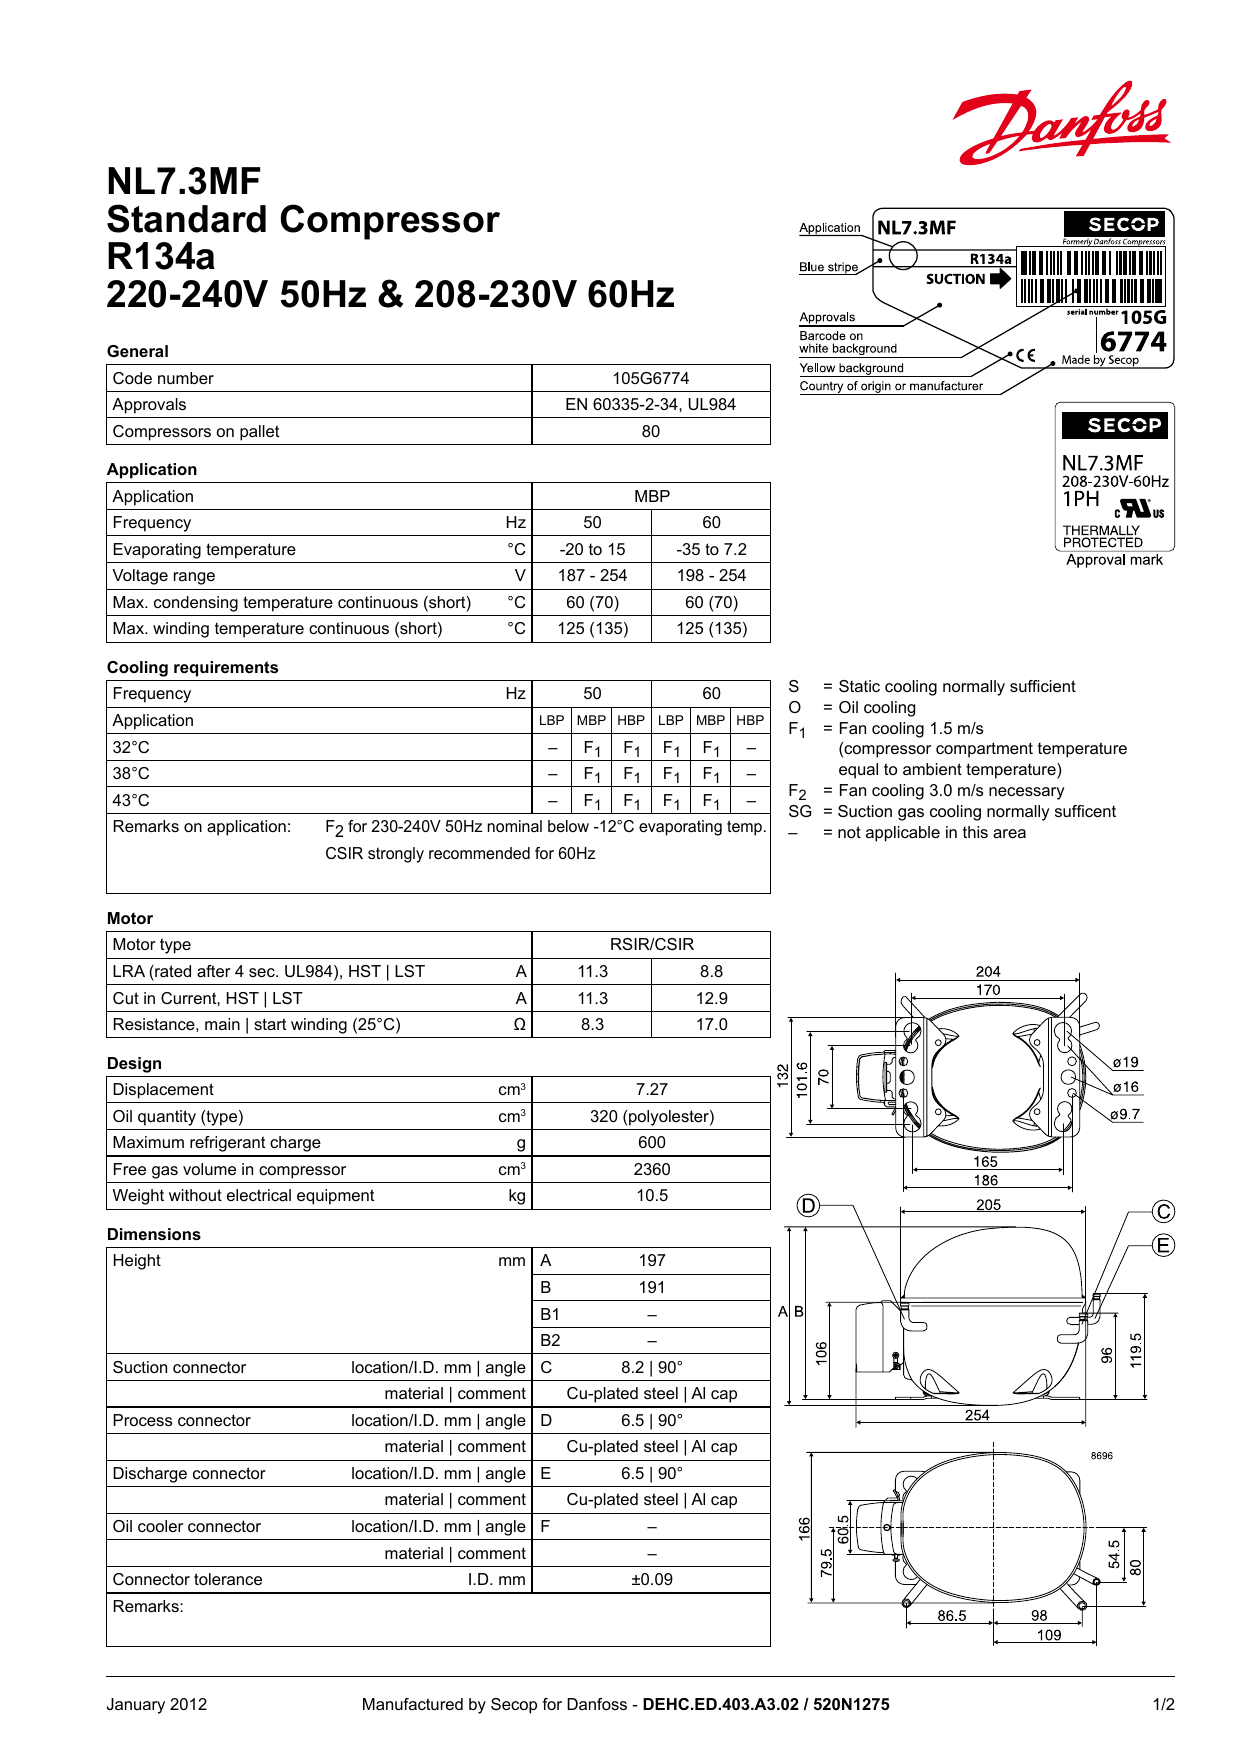 230V compressor Danfoss NL7.3MF 105G6772 195B0370 made by Secop R134a